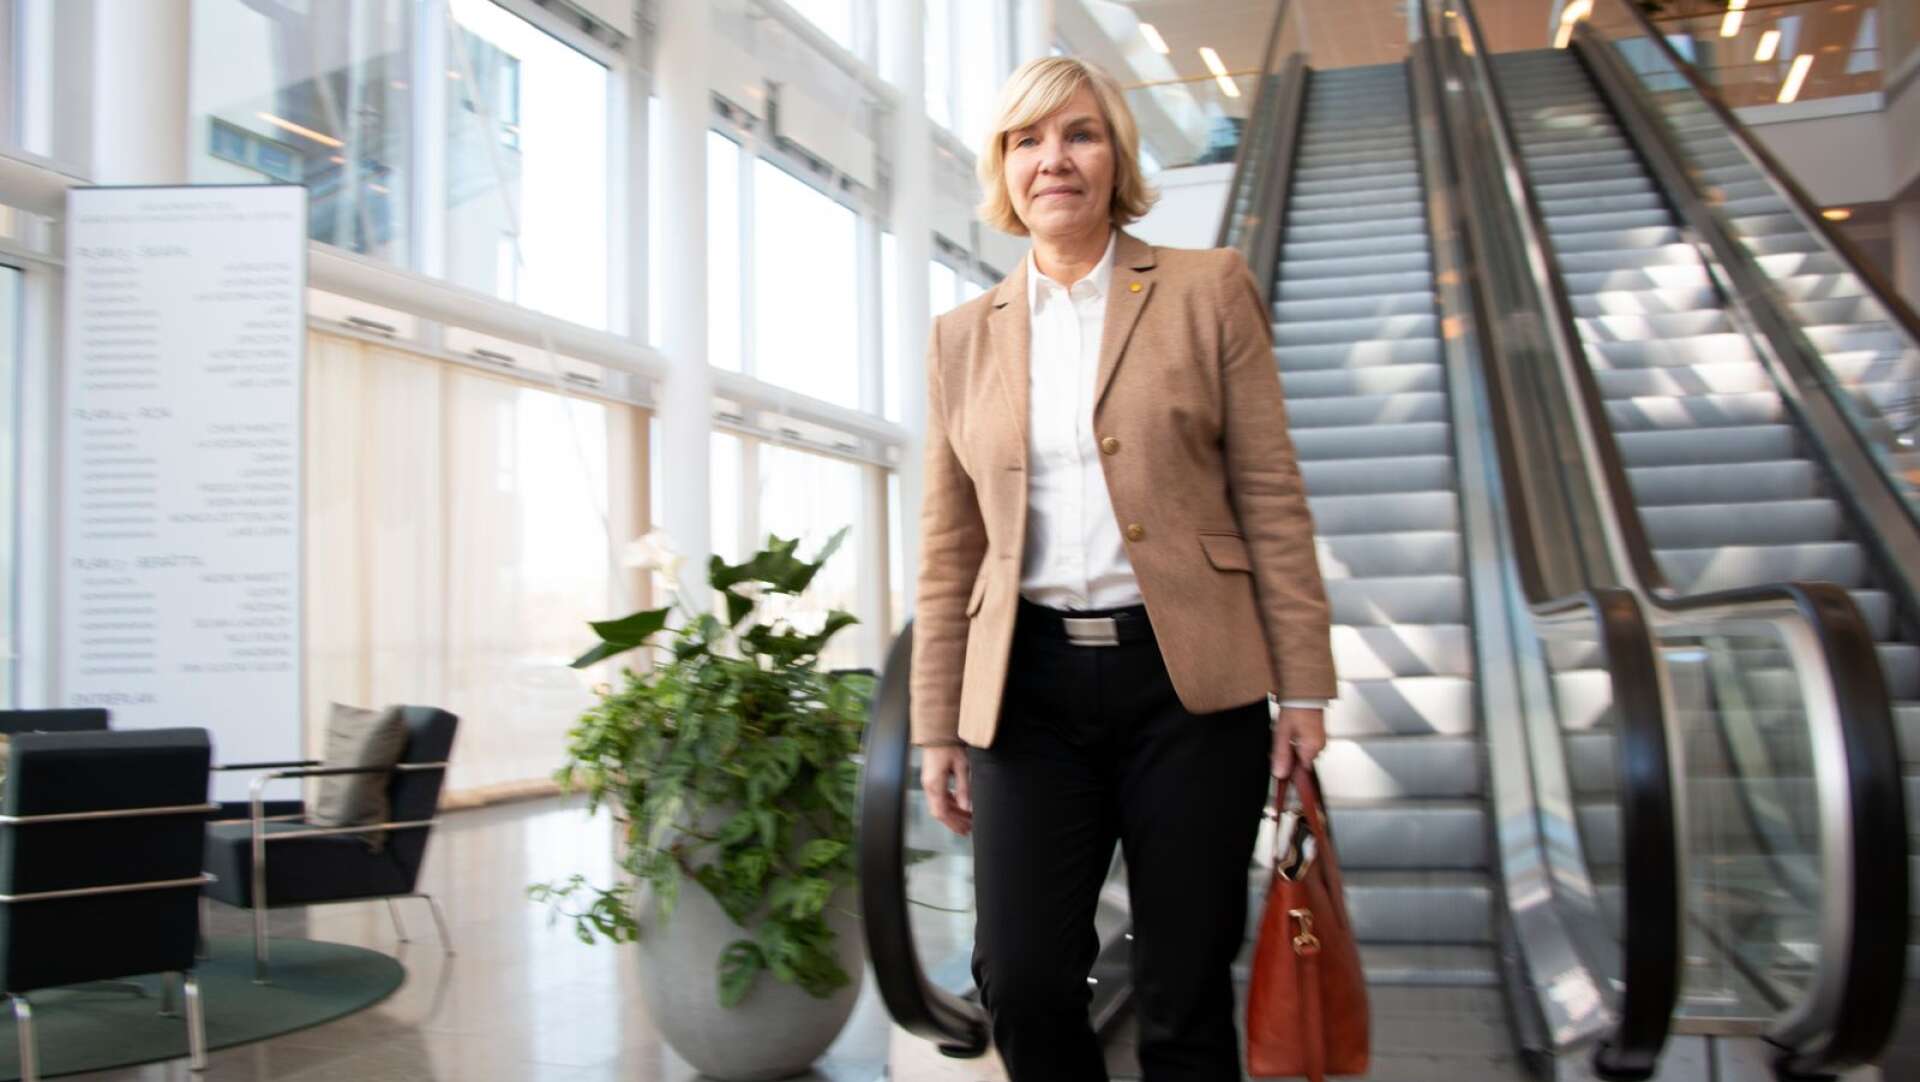 Långsiktighet är en av Karlstads kommuns framgångsfaktorer, menar ekonomidirektör Carina Strandberg.